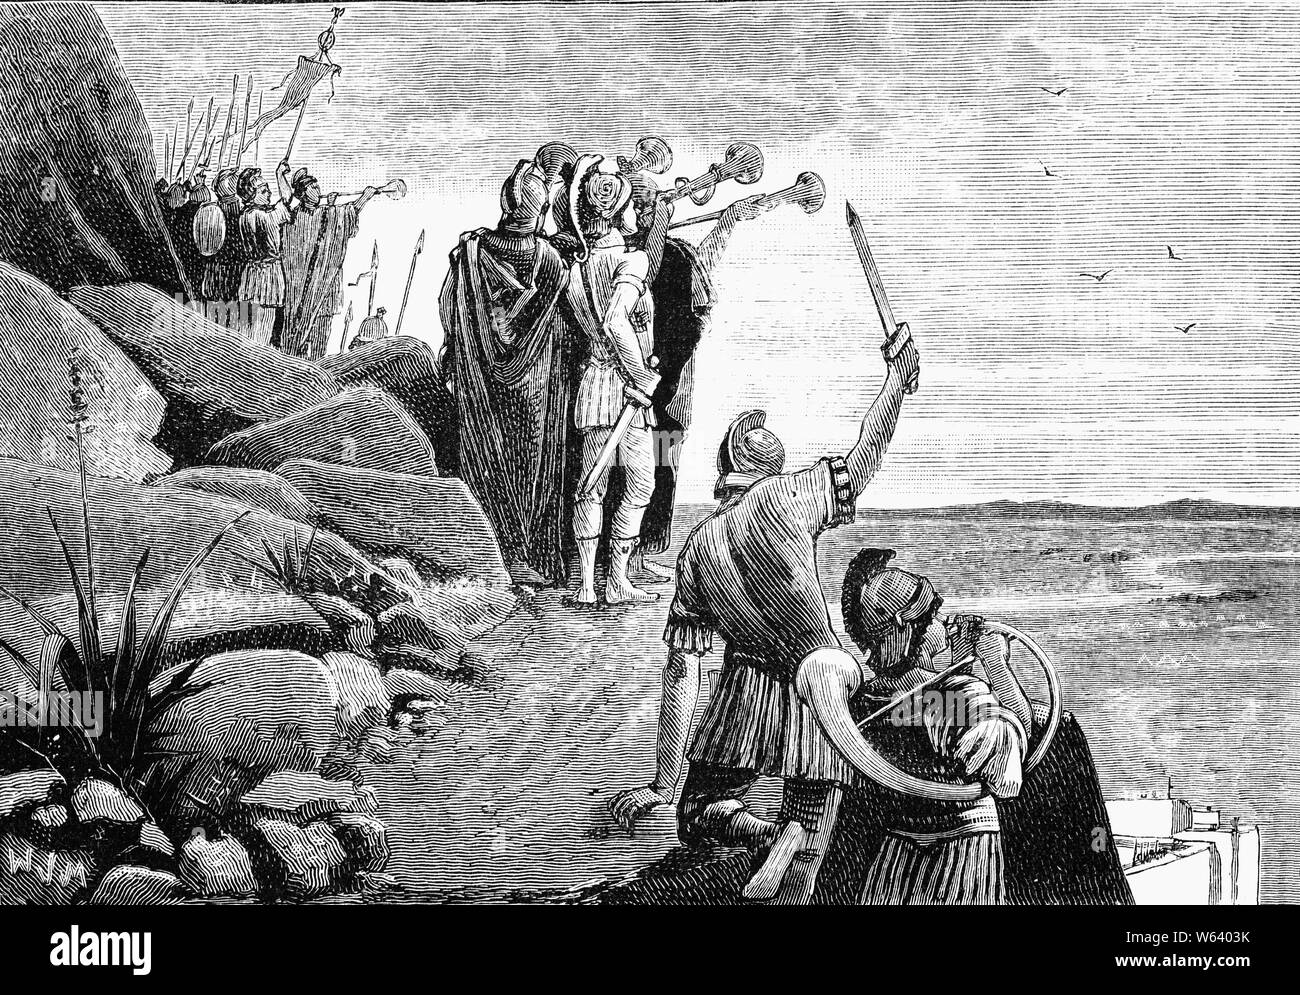 Un incidente durante la guerra Jugurthine che ha avuto luogo a 112-106 BC, tra Roma e Jugurtha di Numidia, un regno sulla costa del nord Africa (ora Algeria). Jugurtha era nipote e adottato il figlio di Micipsa, re di Numidia, a cui successe sul trono, superando i suoi rivali attraverso l assassinio, la guerra e la corruzione. La guerra ha costituito un importante fase nella sottomissione romana del Nord Africa, ma Numidia non è divenuta una provincia romana fino al 46 A.C. In seguito Jugurtha di usurpazione del trono di Numidia, un fedele alleato di Roma poiché le guerre puniche, Roma sentiti in dovere di intervenire Foto Stock